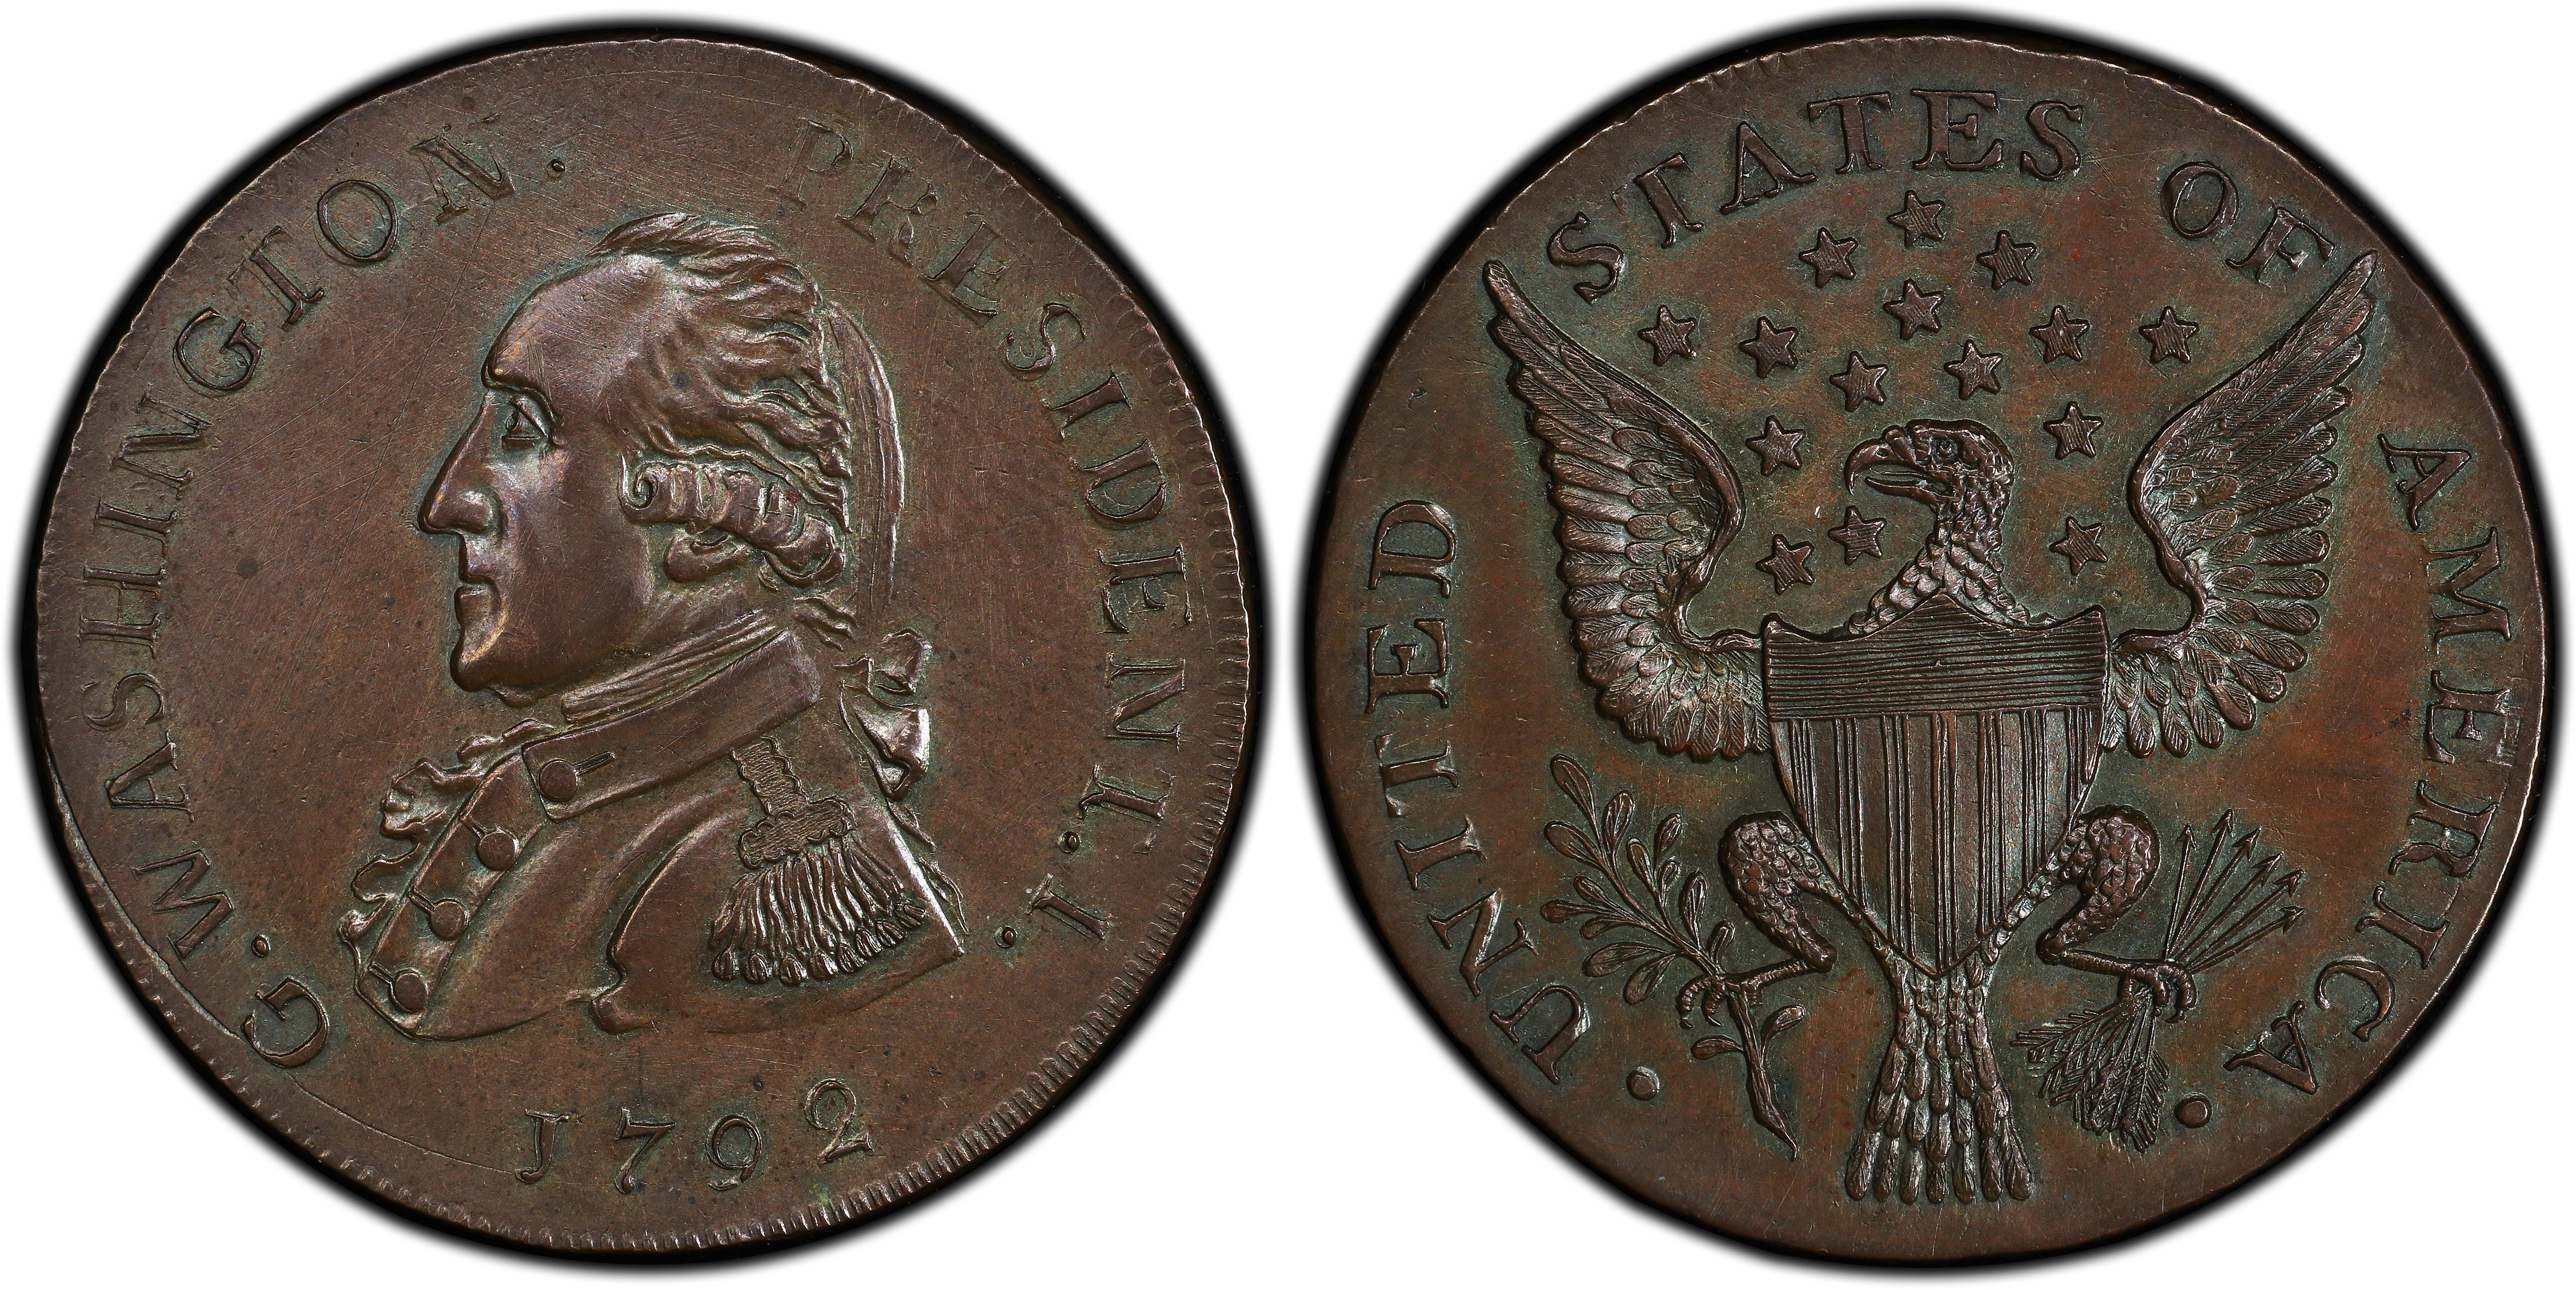 u.s. mint 1792